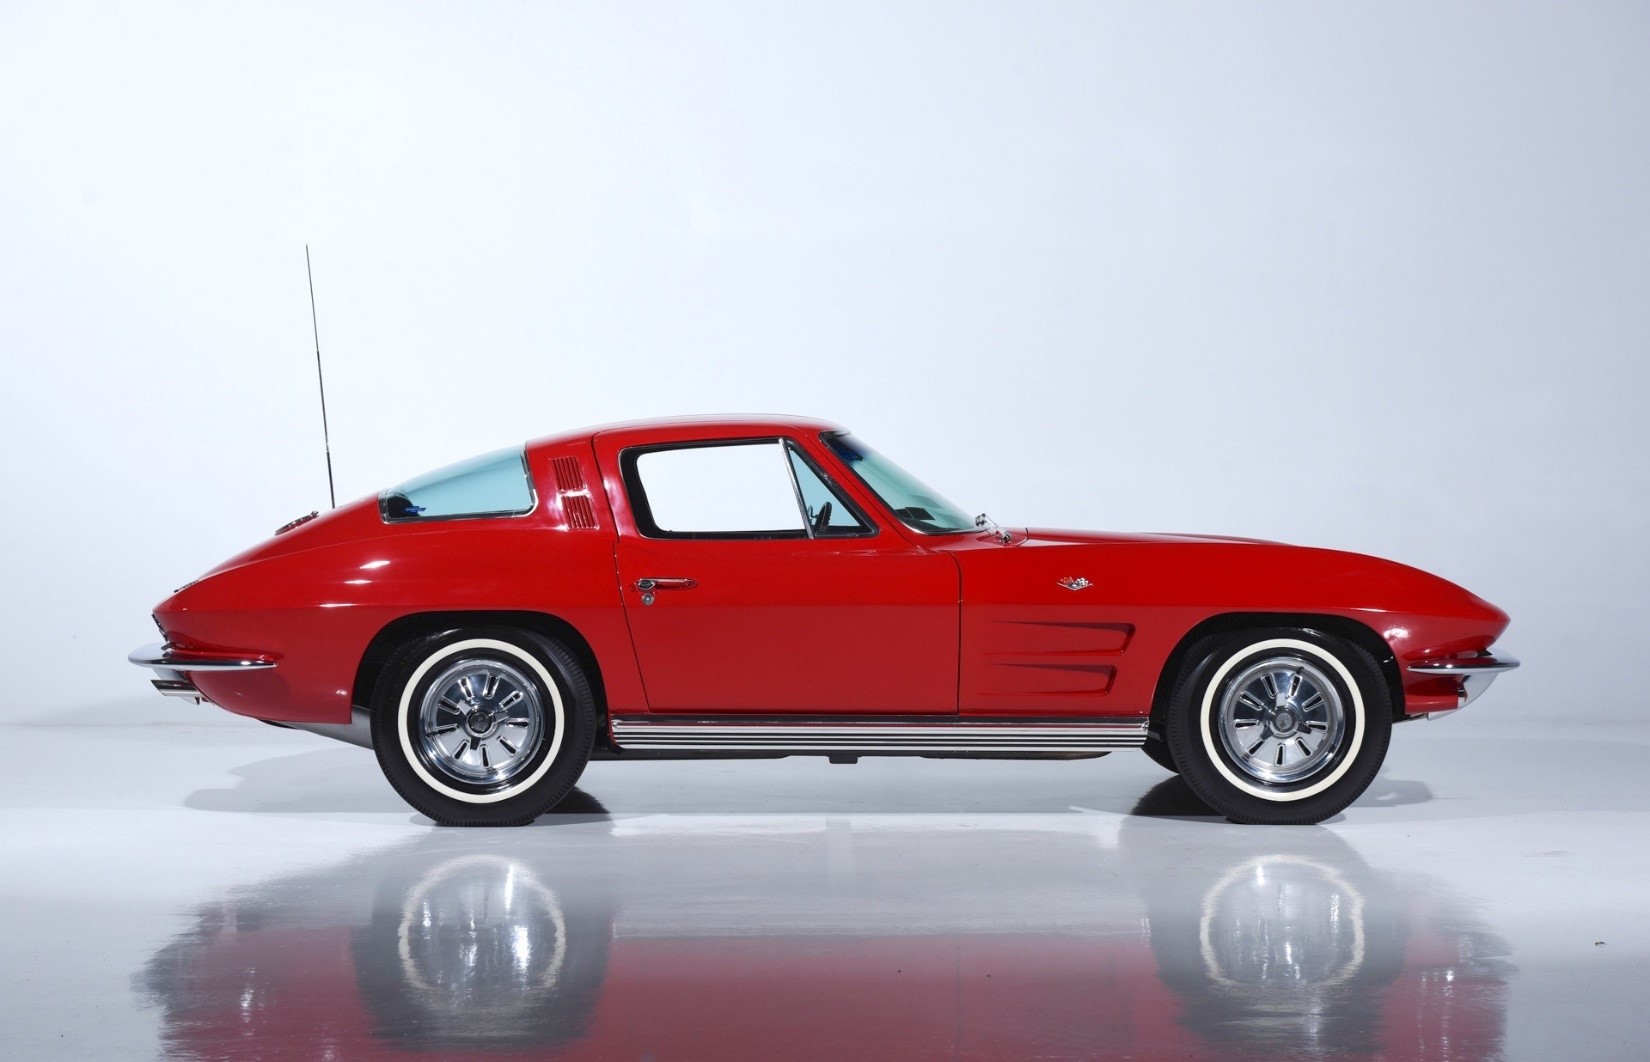 427Stingray.com to Offer A 1964 Chevrolet Corvette Coupe at No Reserve